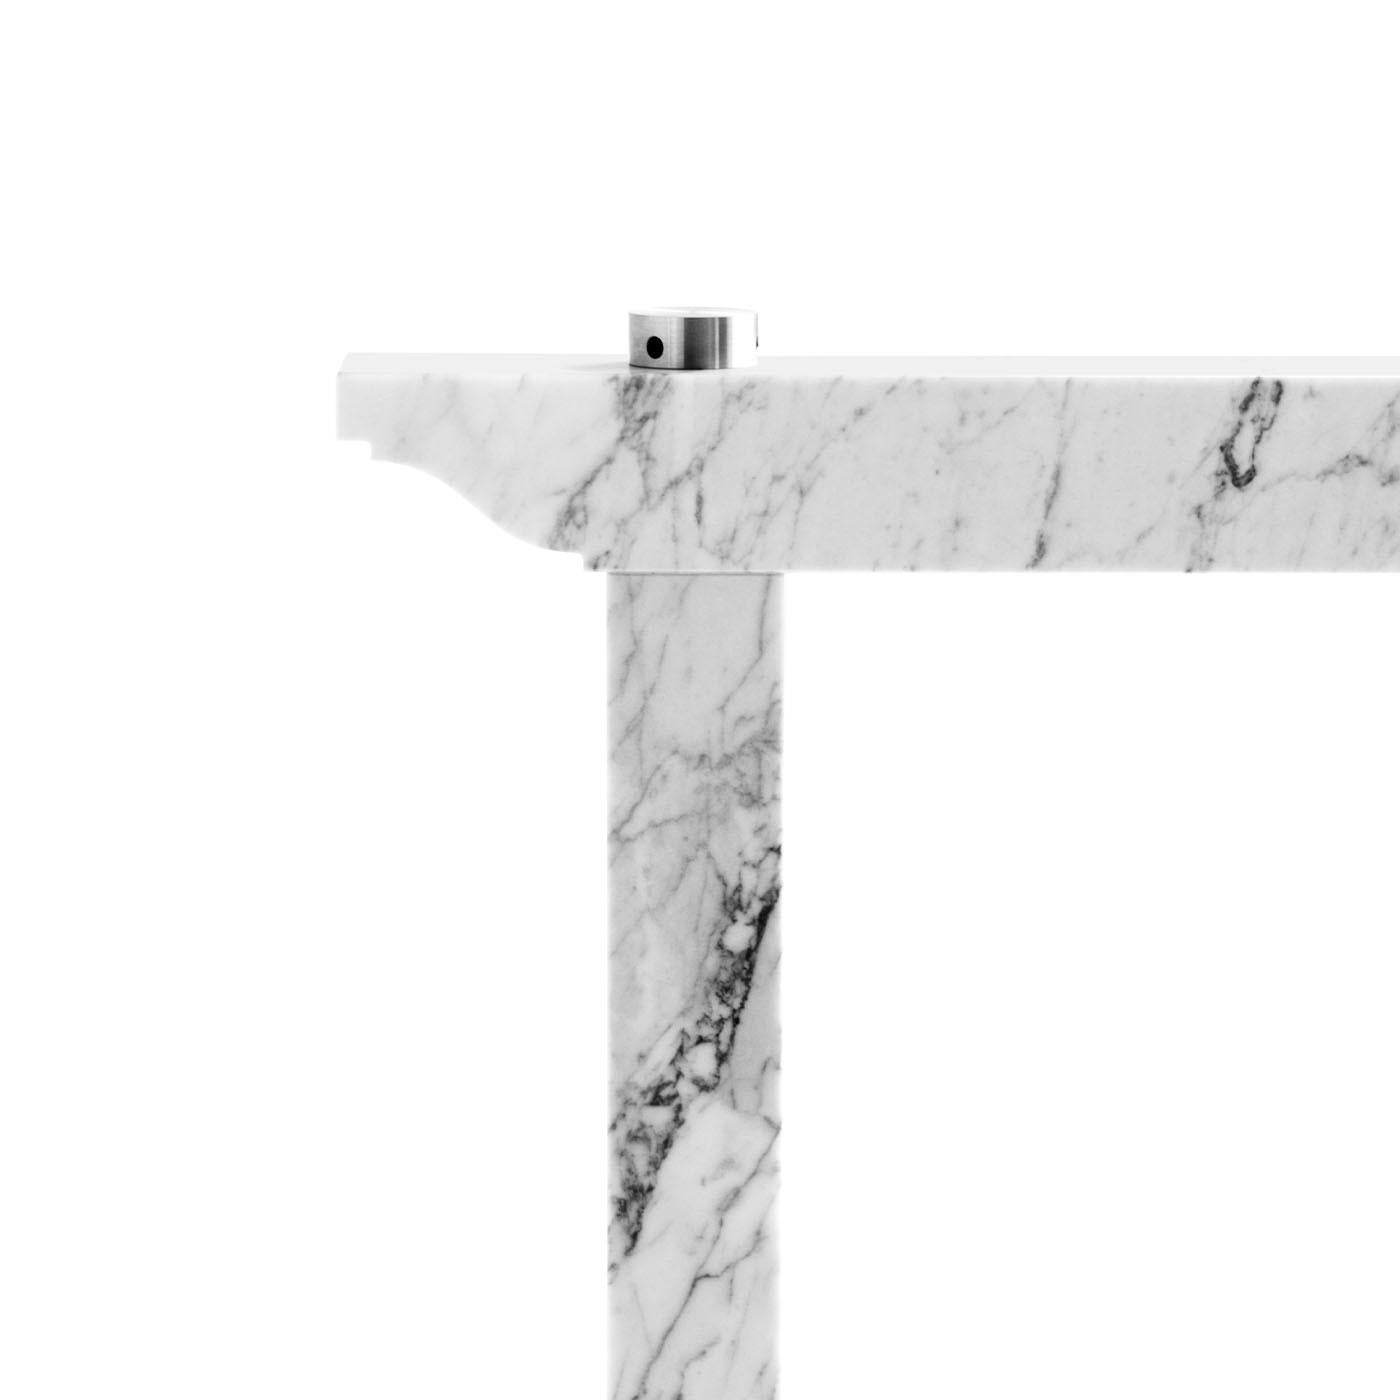 Dieses Gestell aus weißem Carrara-Marmor, das von Enrico Tonucci entworfen wurde, ist für Platten aus Glas, Holz, Marmor oder anderen Materialien geeignet. Seine strengen und kantigen Linien bilden ein auf dem Kopf stehendes U. Die einzige Laune ist